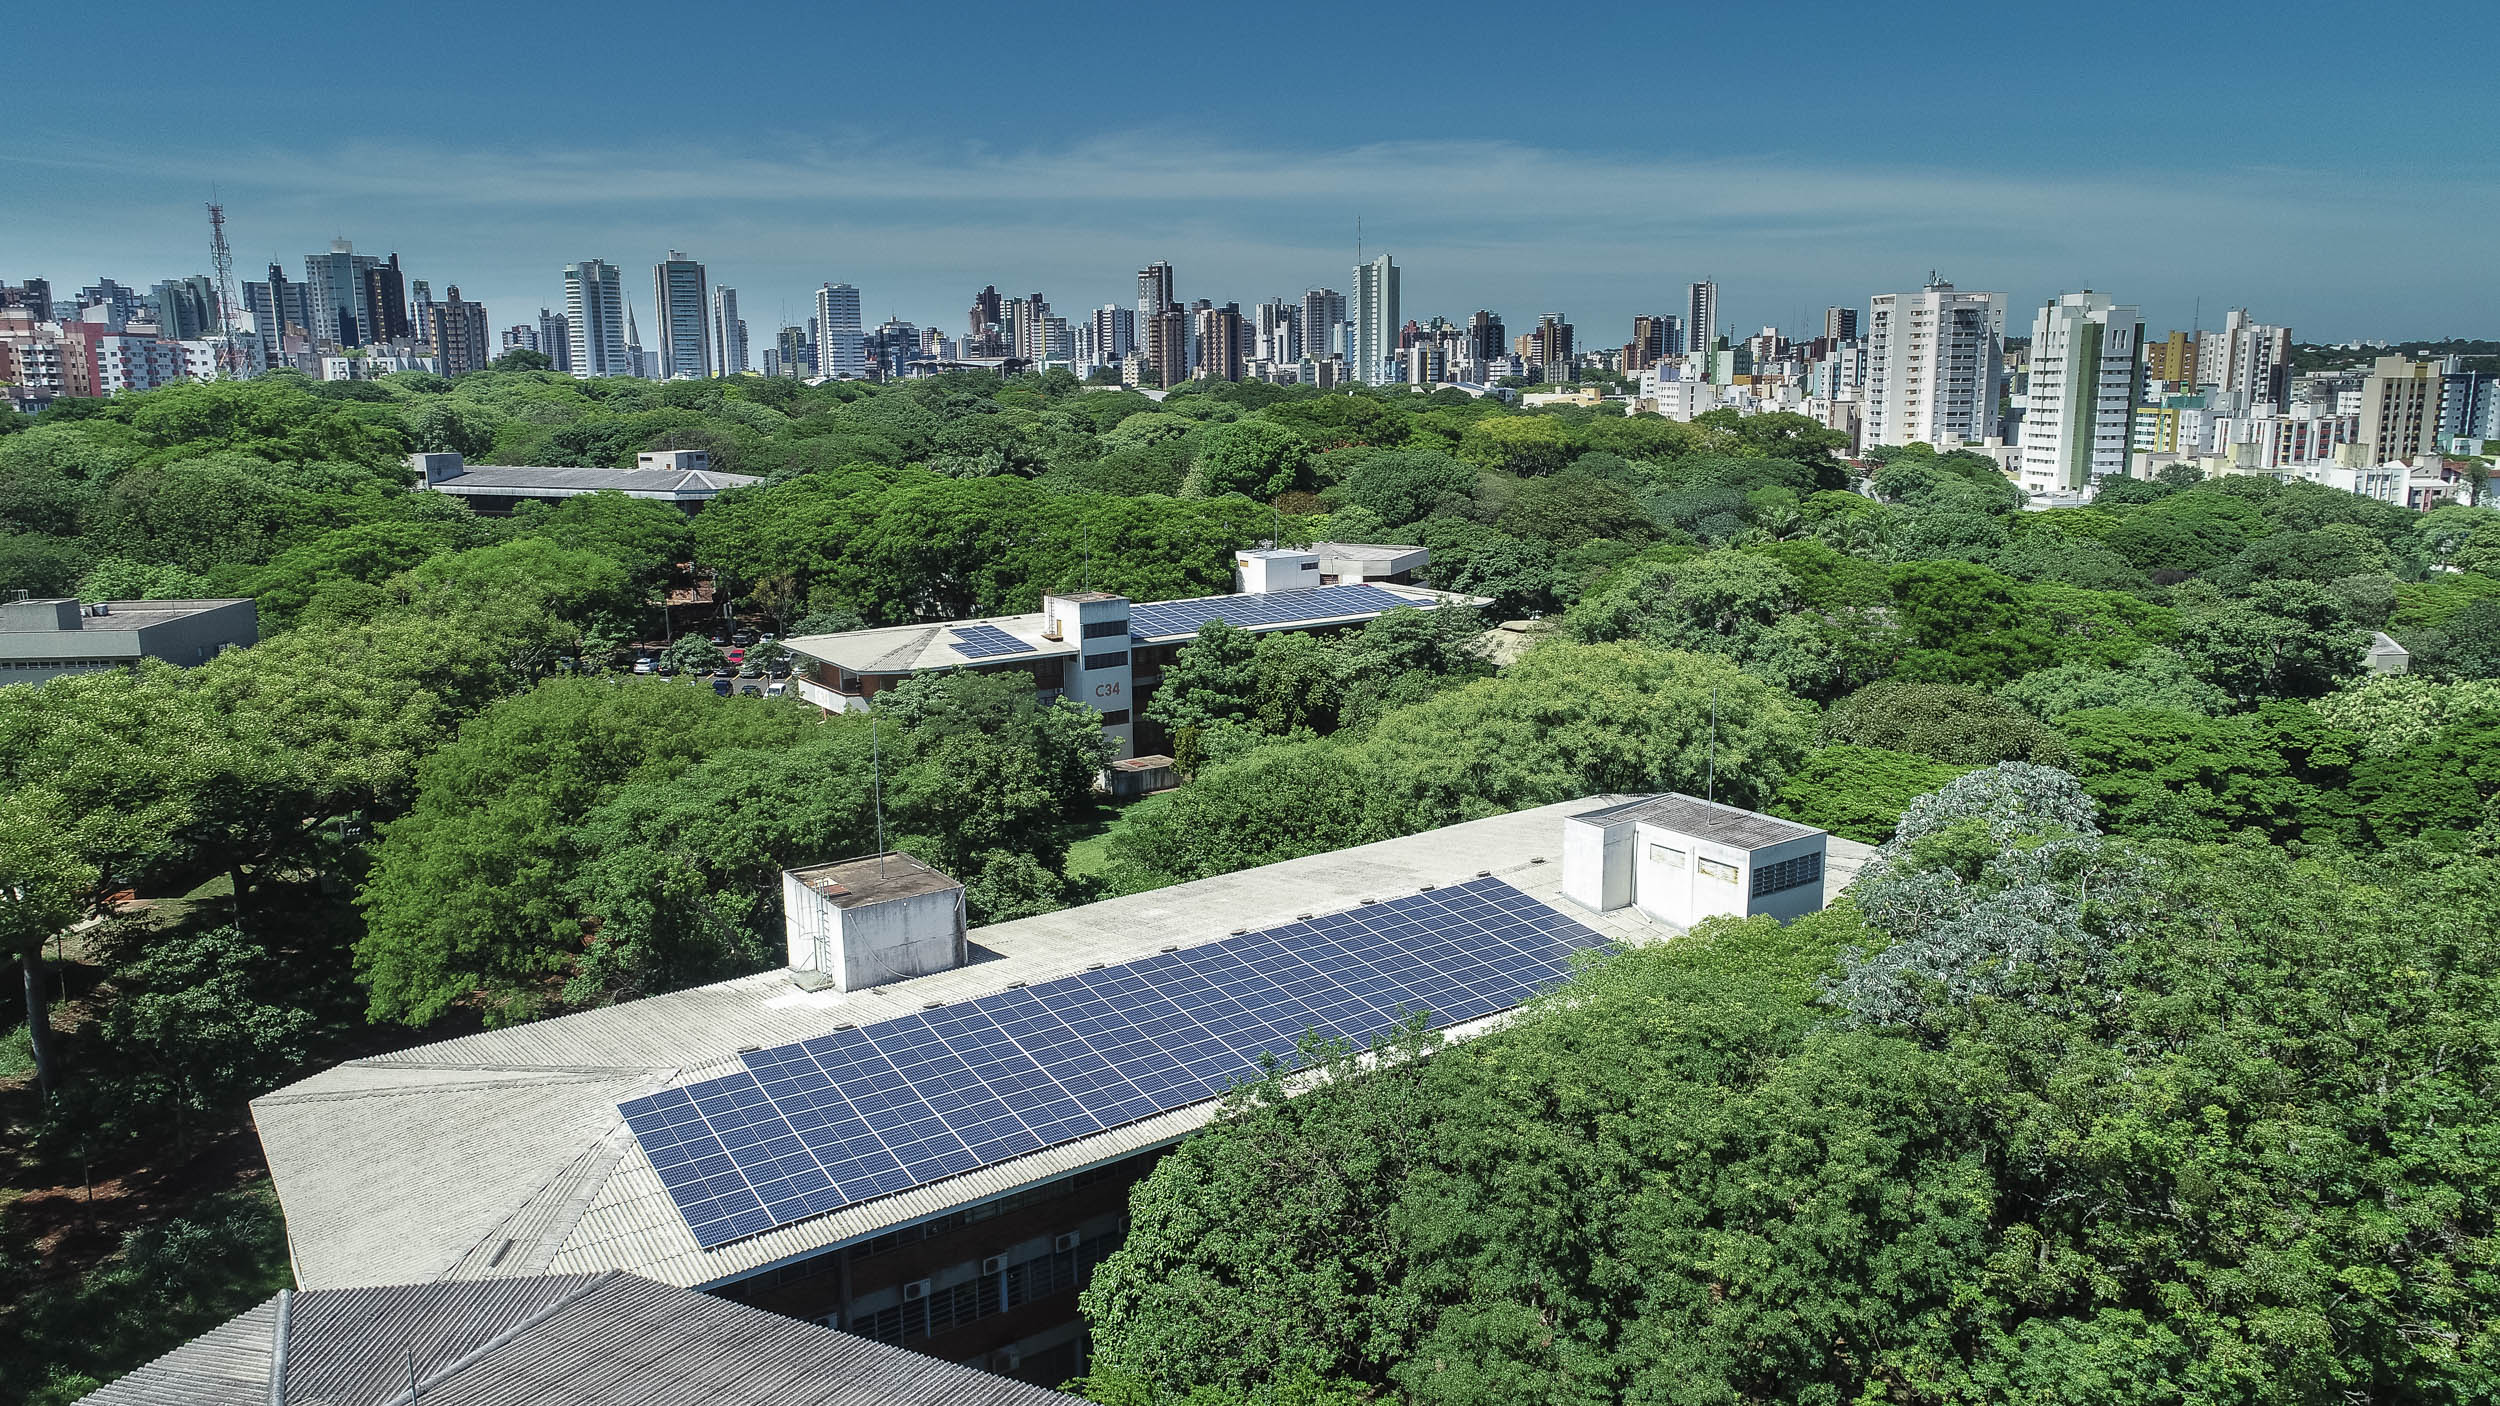 Eficiencia energetica 2019 11 19 Aereas Campus Placas Fotovoltaicas Blocos 0031